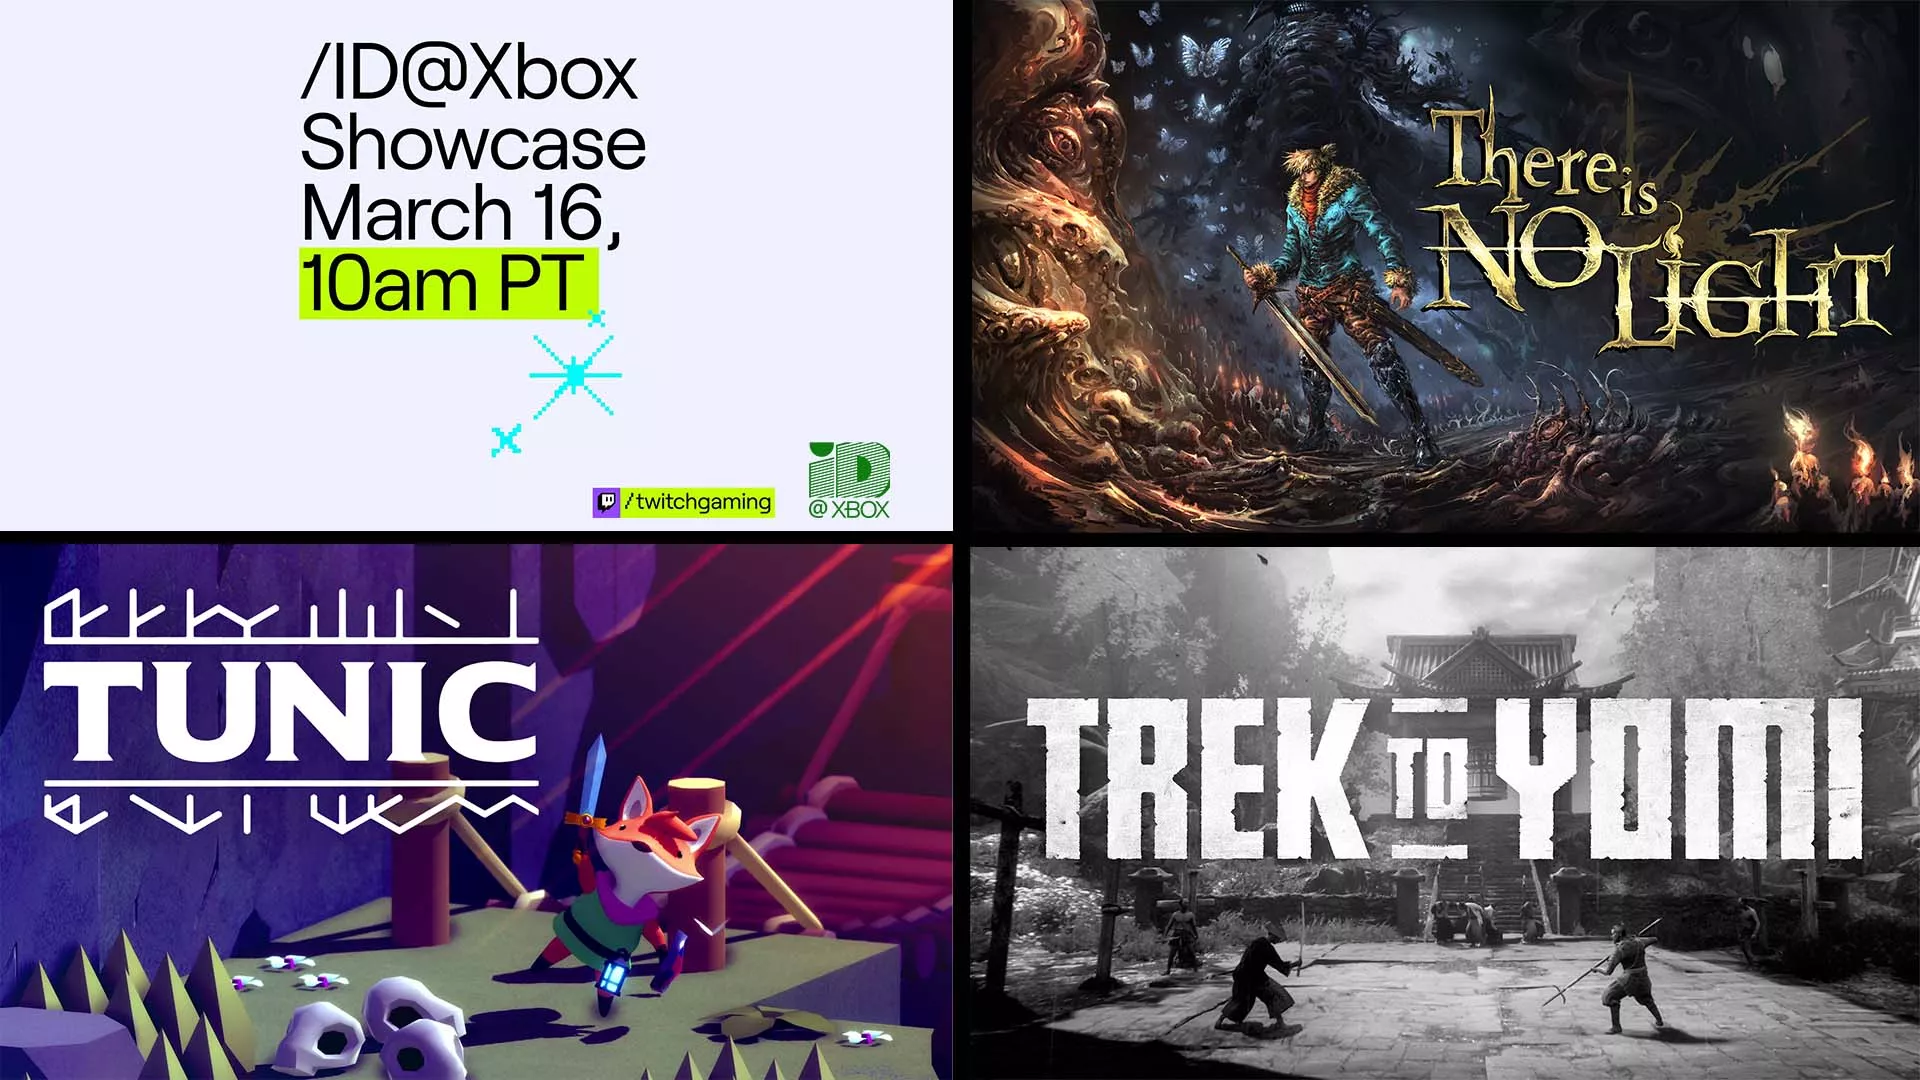 Am Mittwoch werden die kommenden Indies auf der Xbox gezeigt Heropic